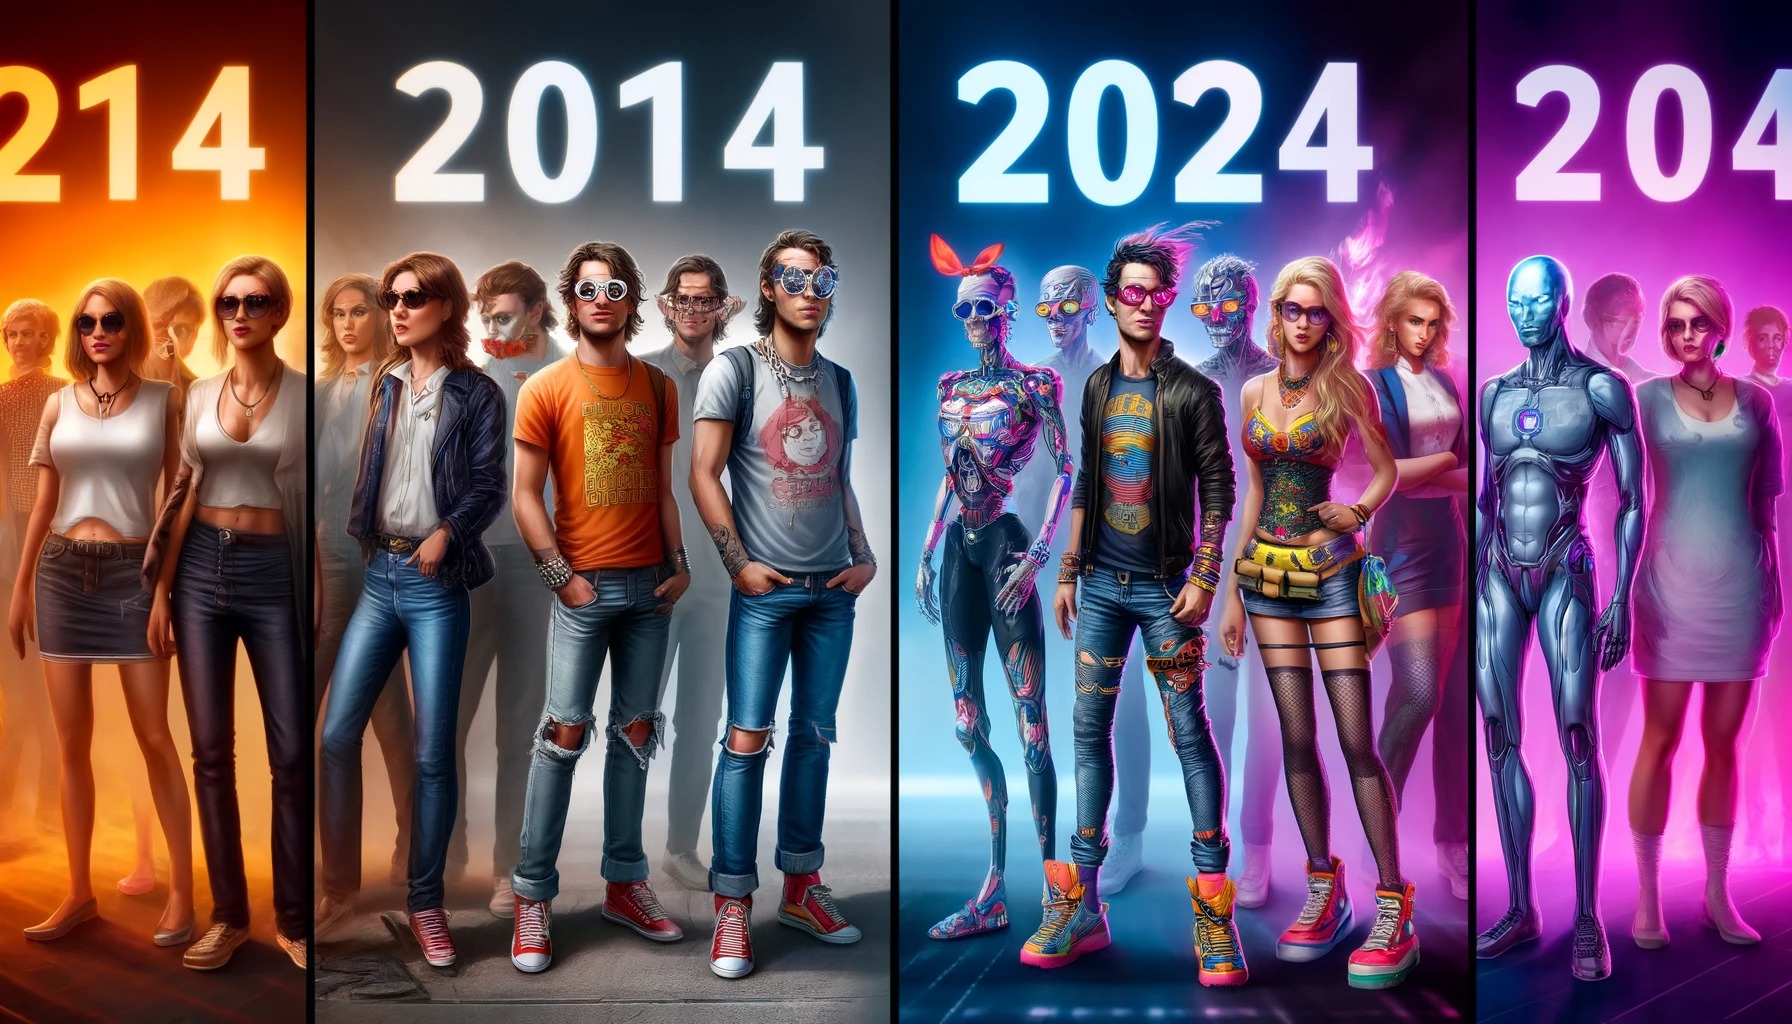 【悲報画像】2014年と2024年のファッションの比較、ヤバすぎる模様wxwxwxwxwxwxw